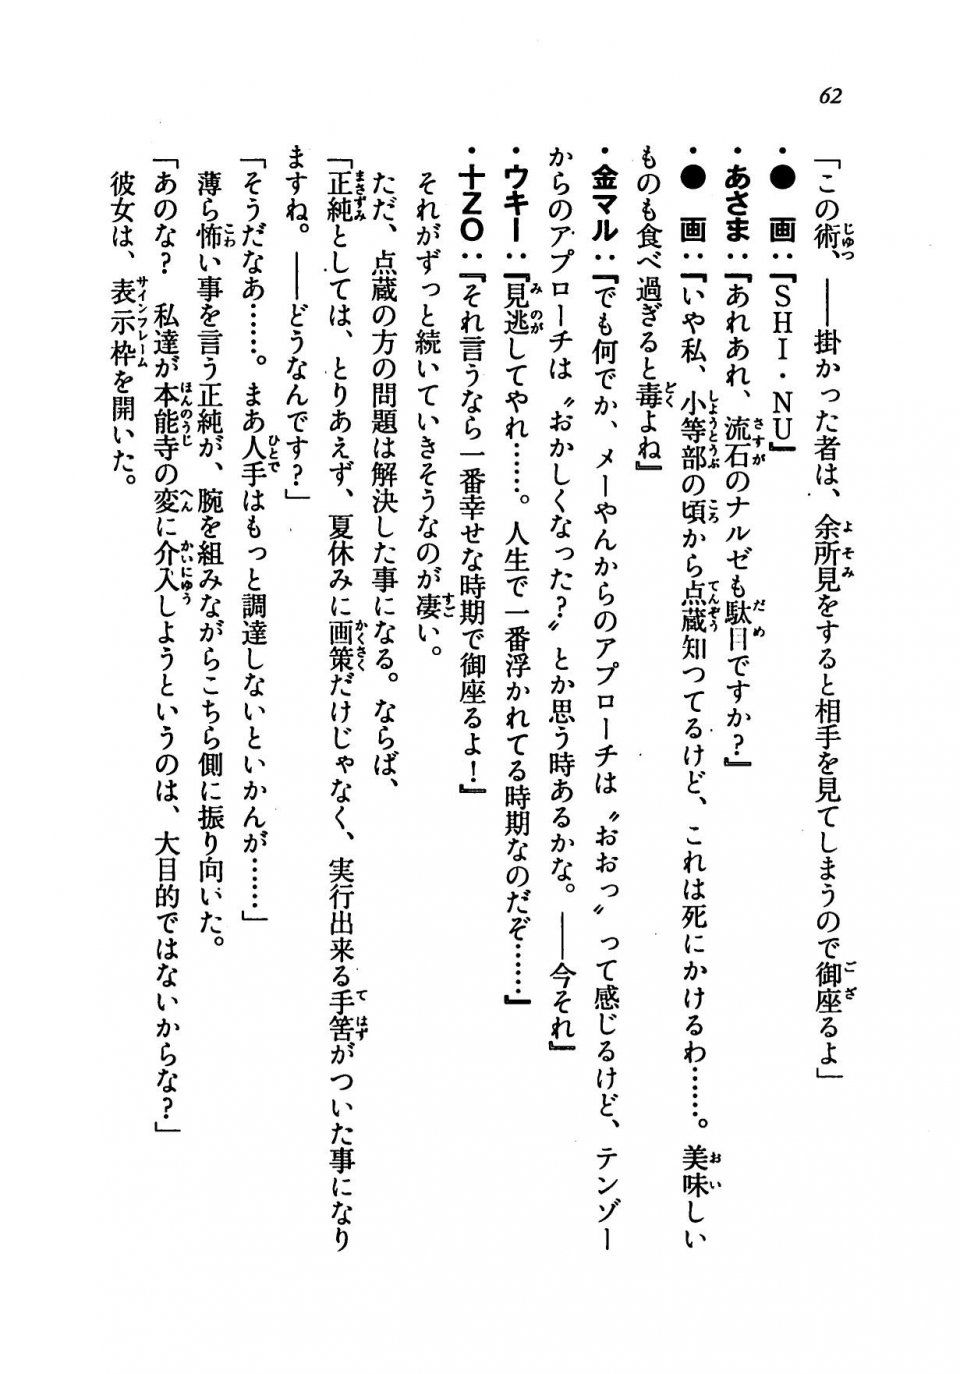 Kyoukai Senjou no Horizon LN Vol 19(8A) - Photo #62